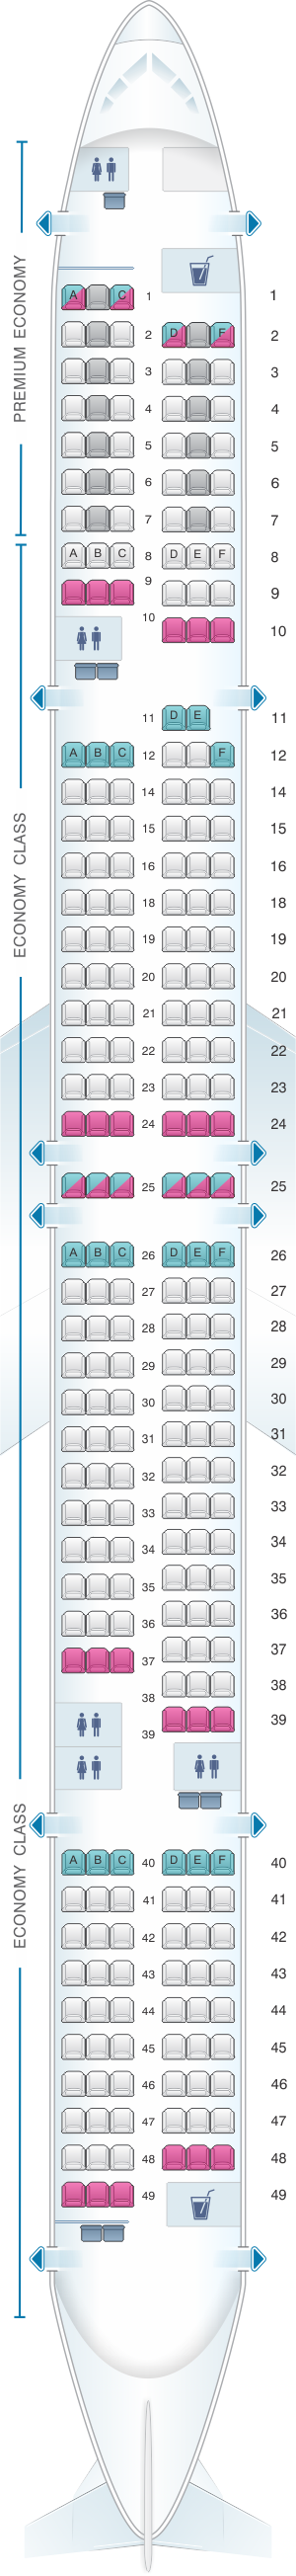 Condor Air Seating Chart